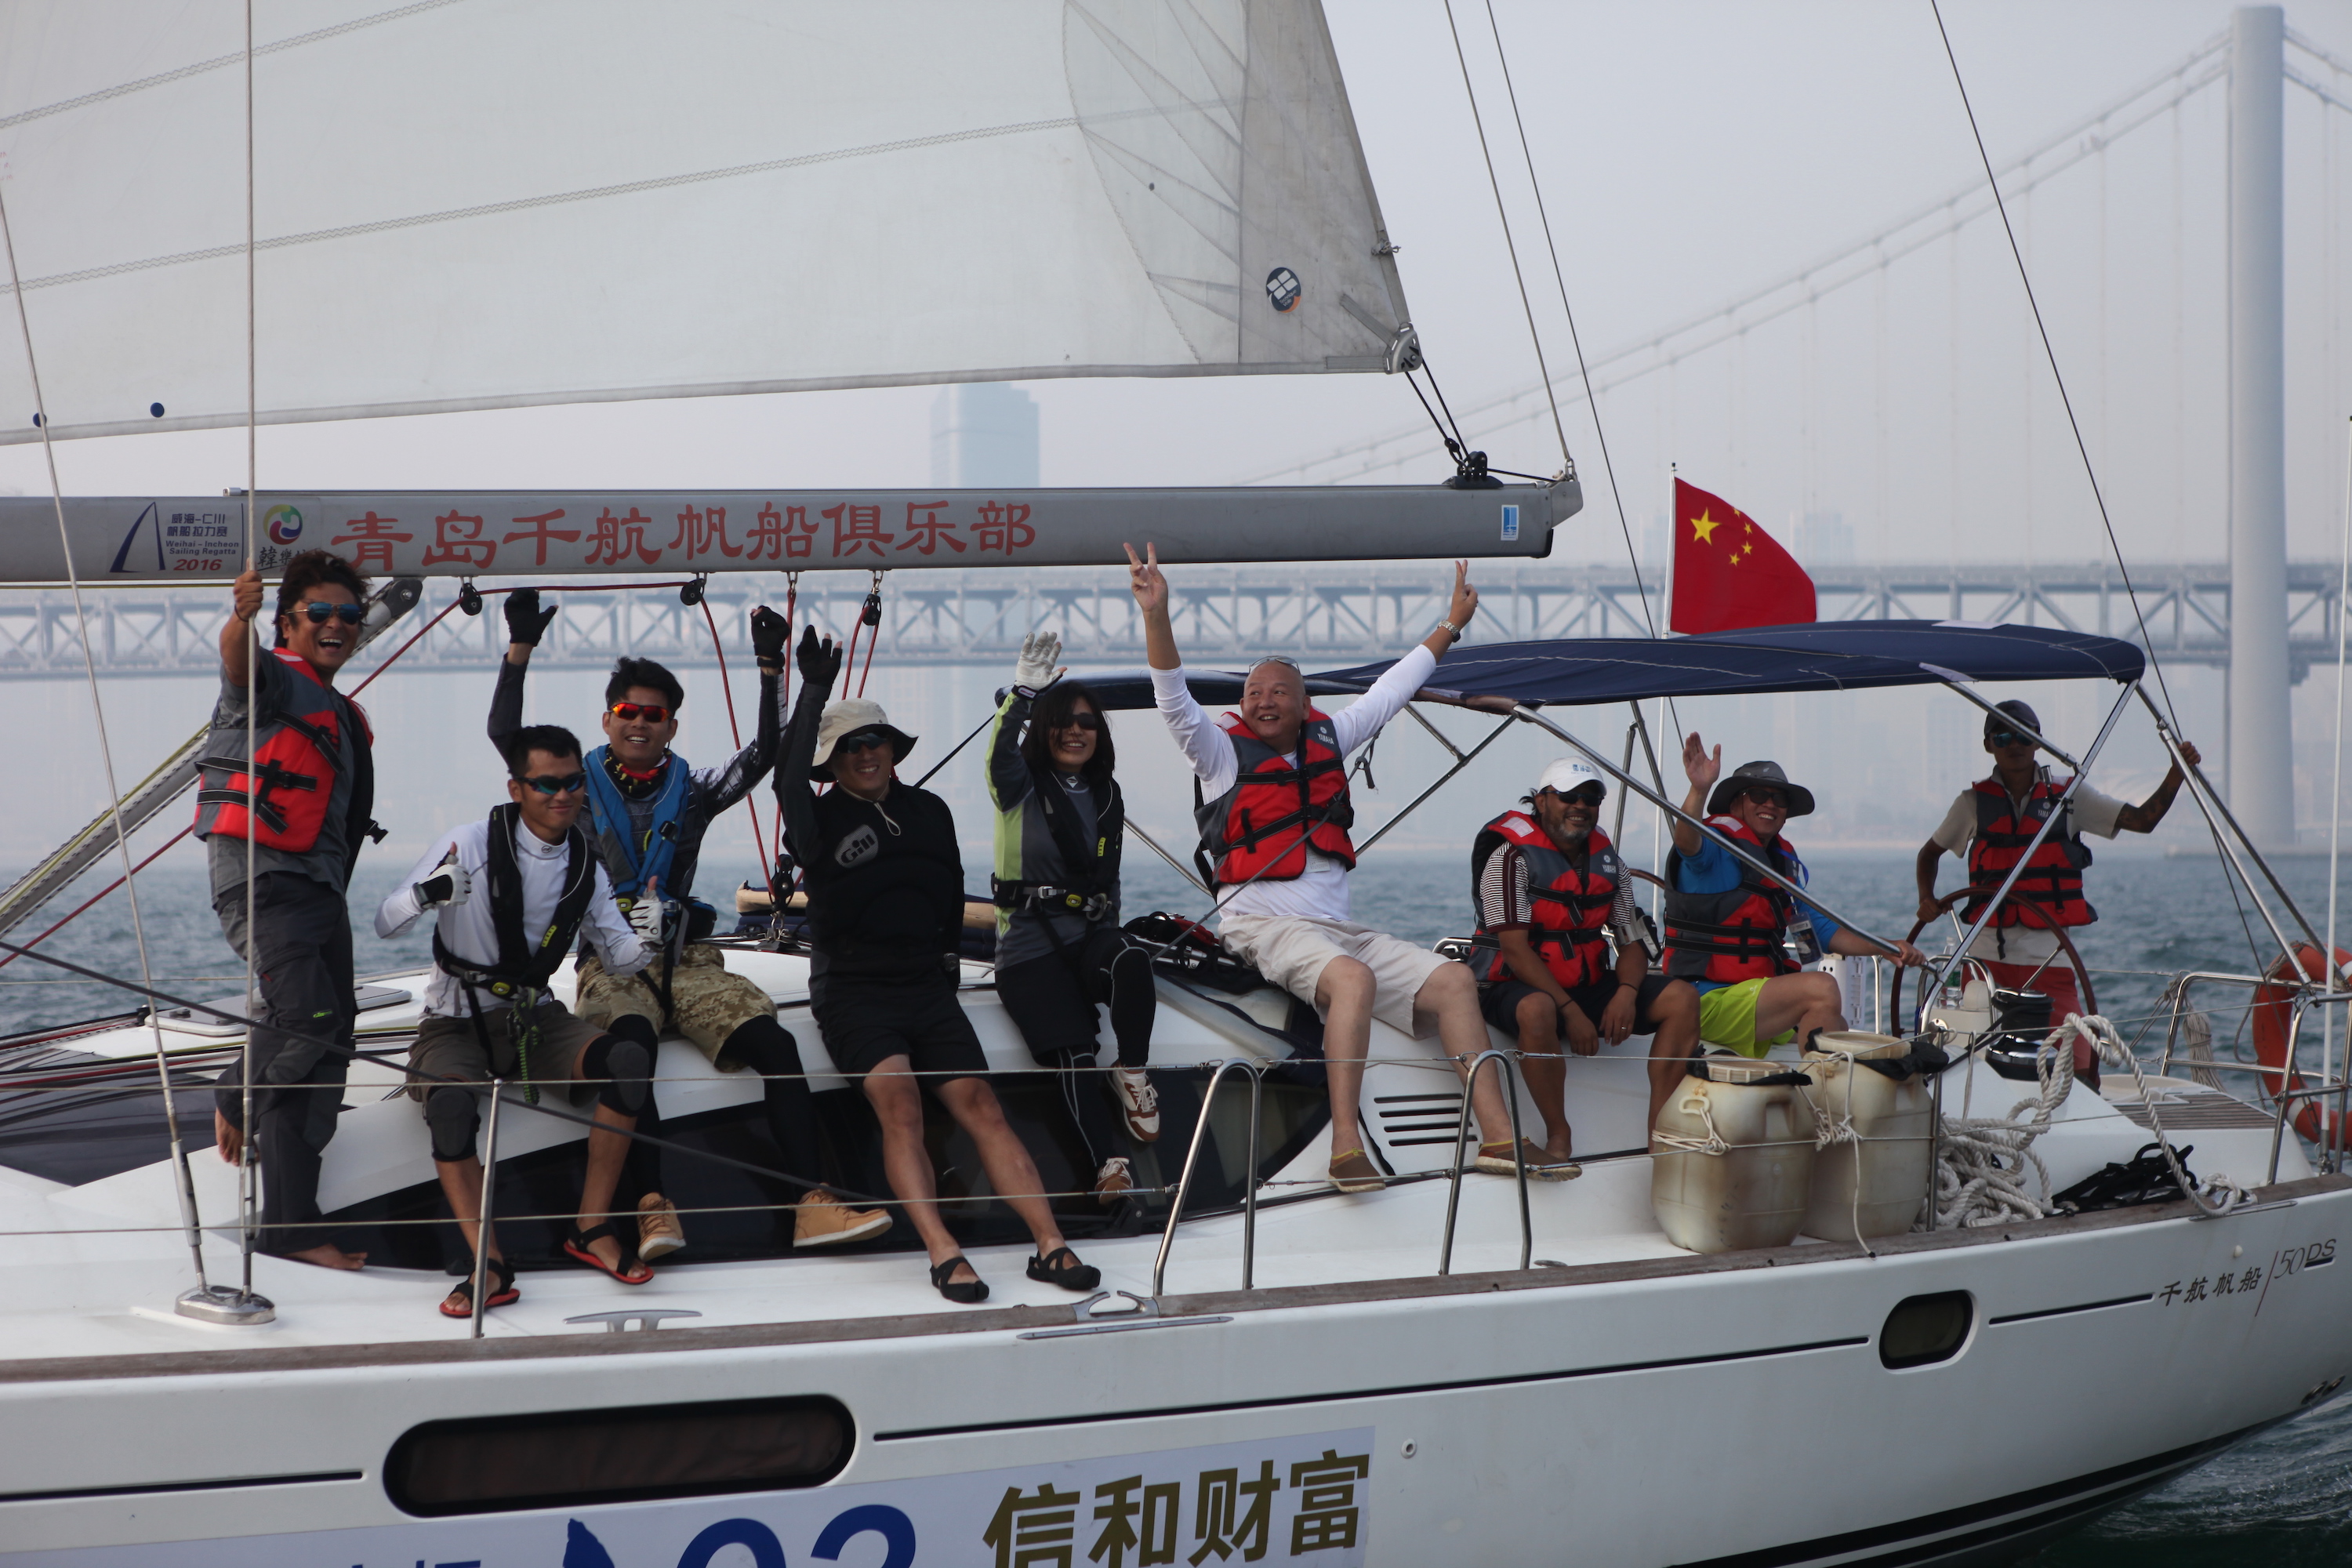 我要航海网千航帆船队2016环渤海杯帆船拉力赛IMG_5567.JPG